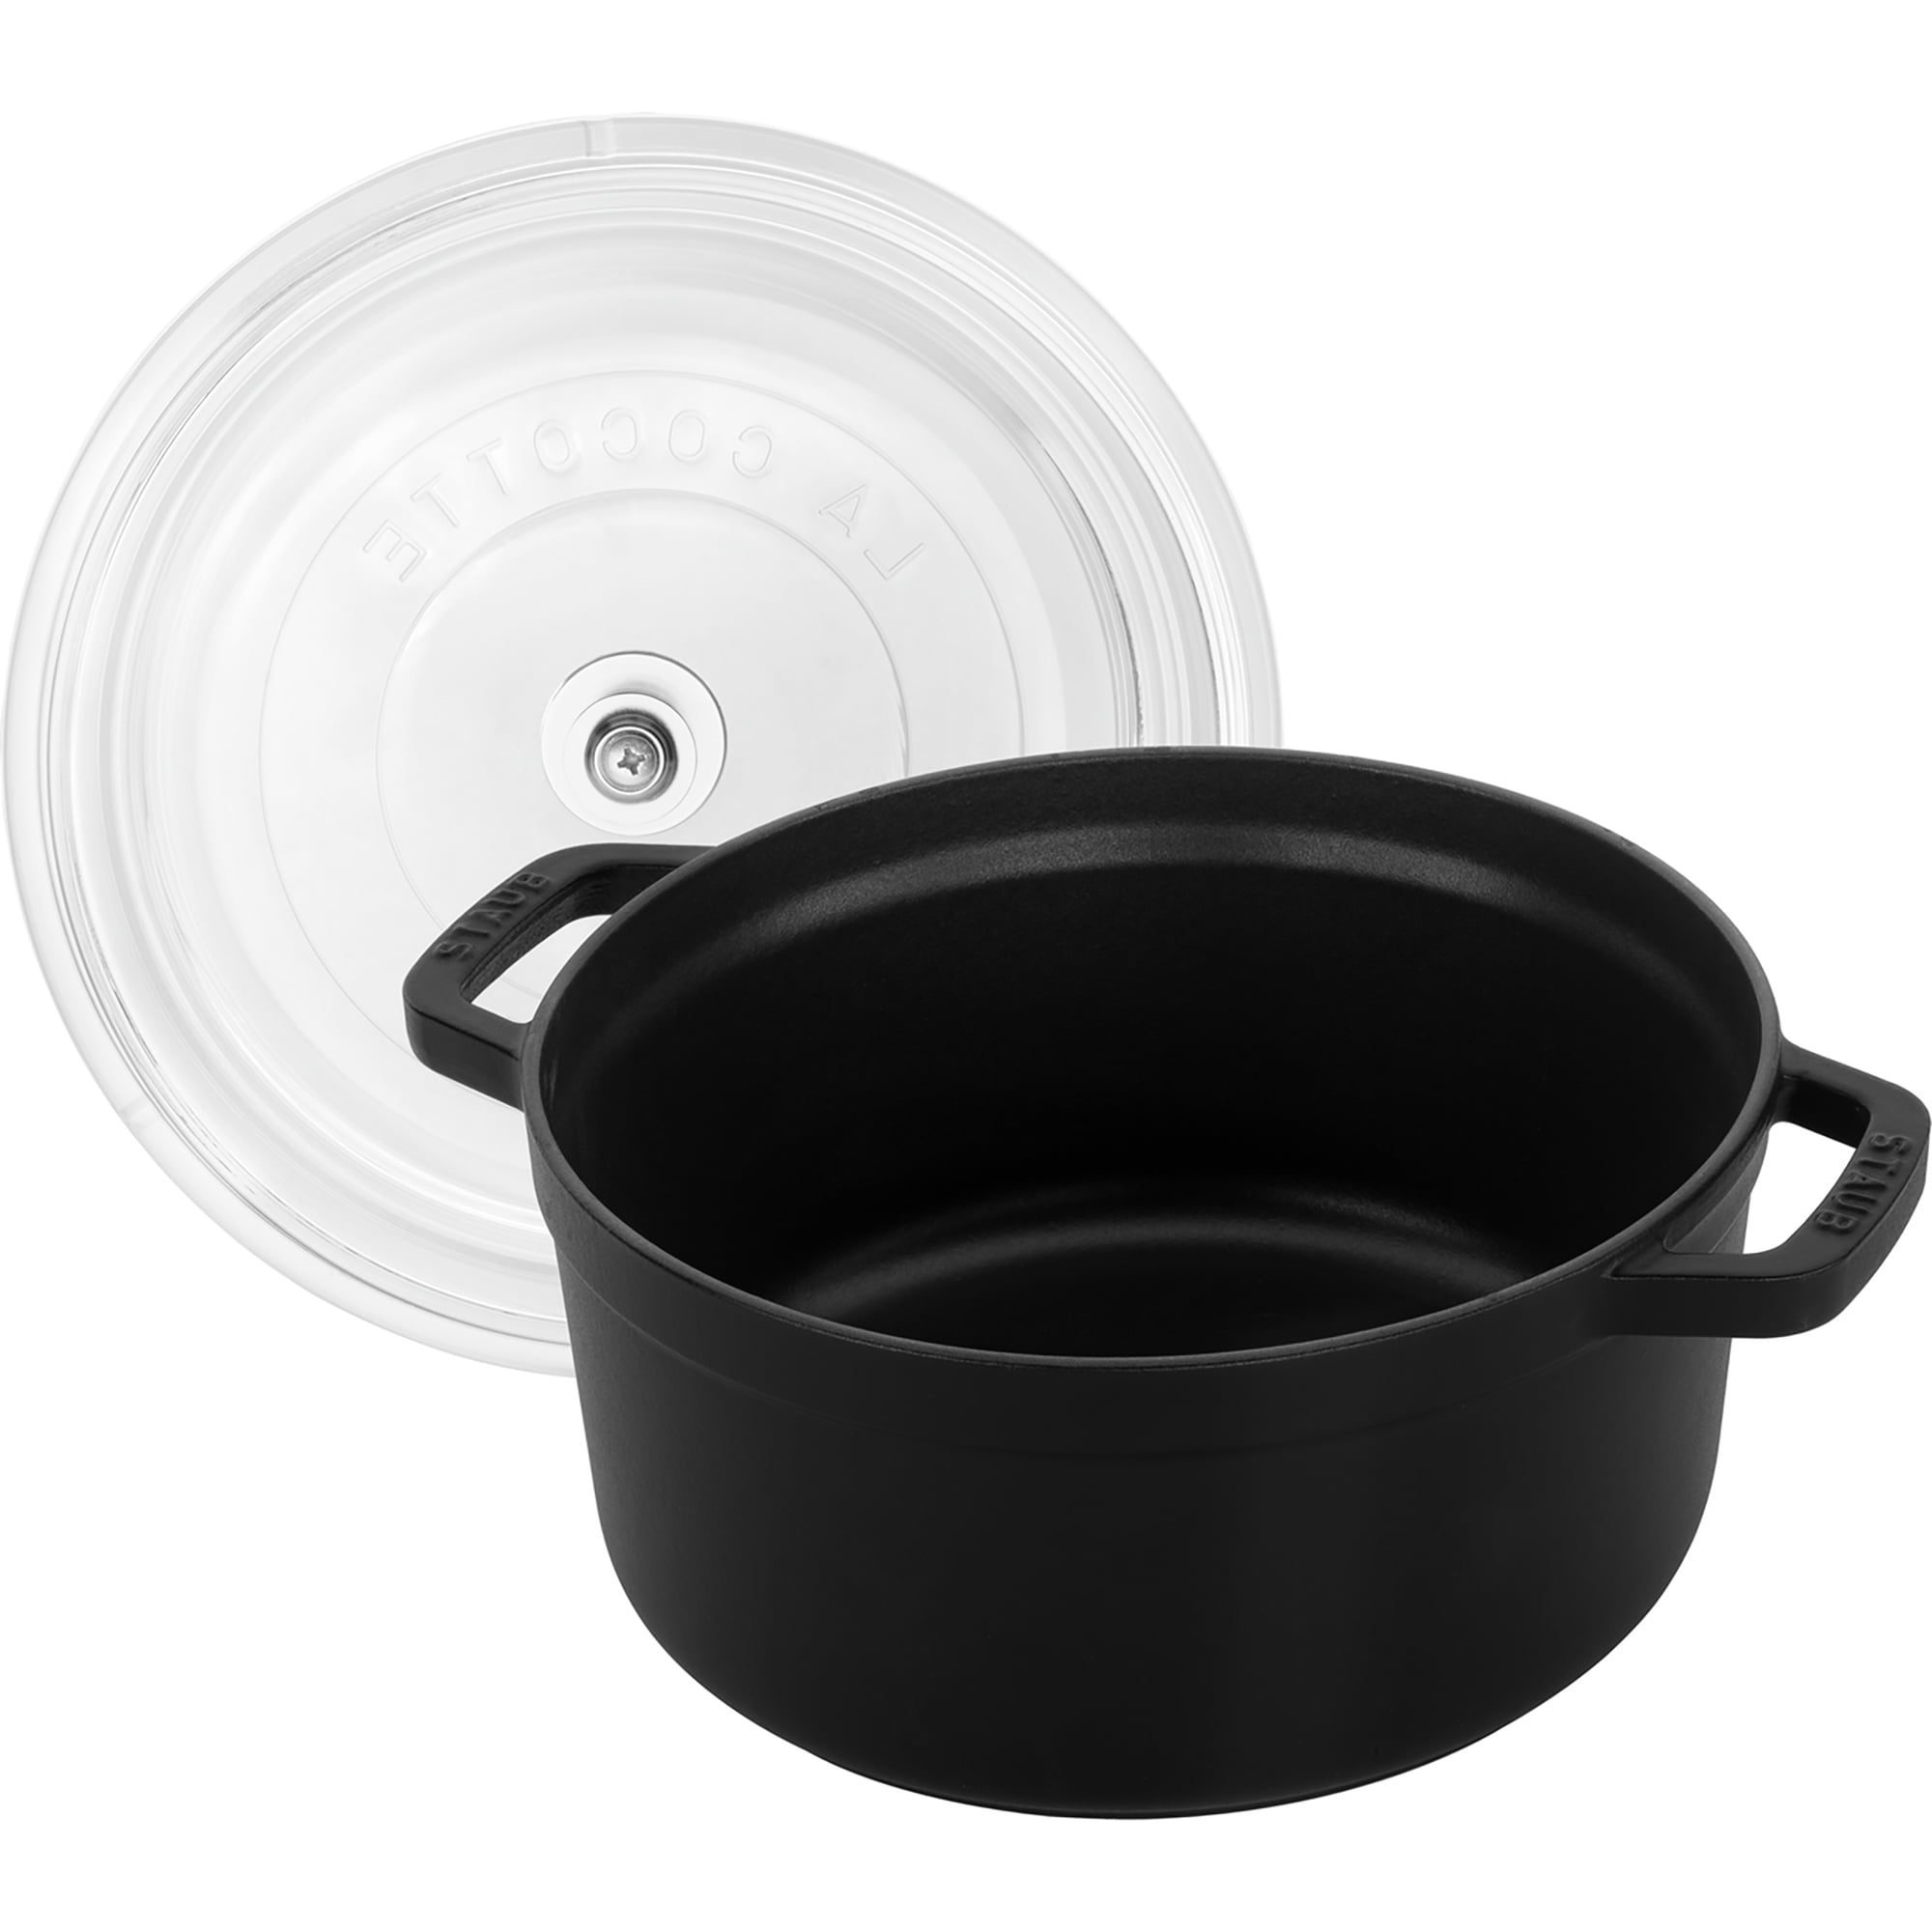 Staub casserole-cocotte 29cm, 4,2 l black